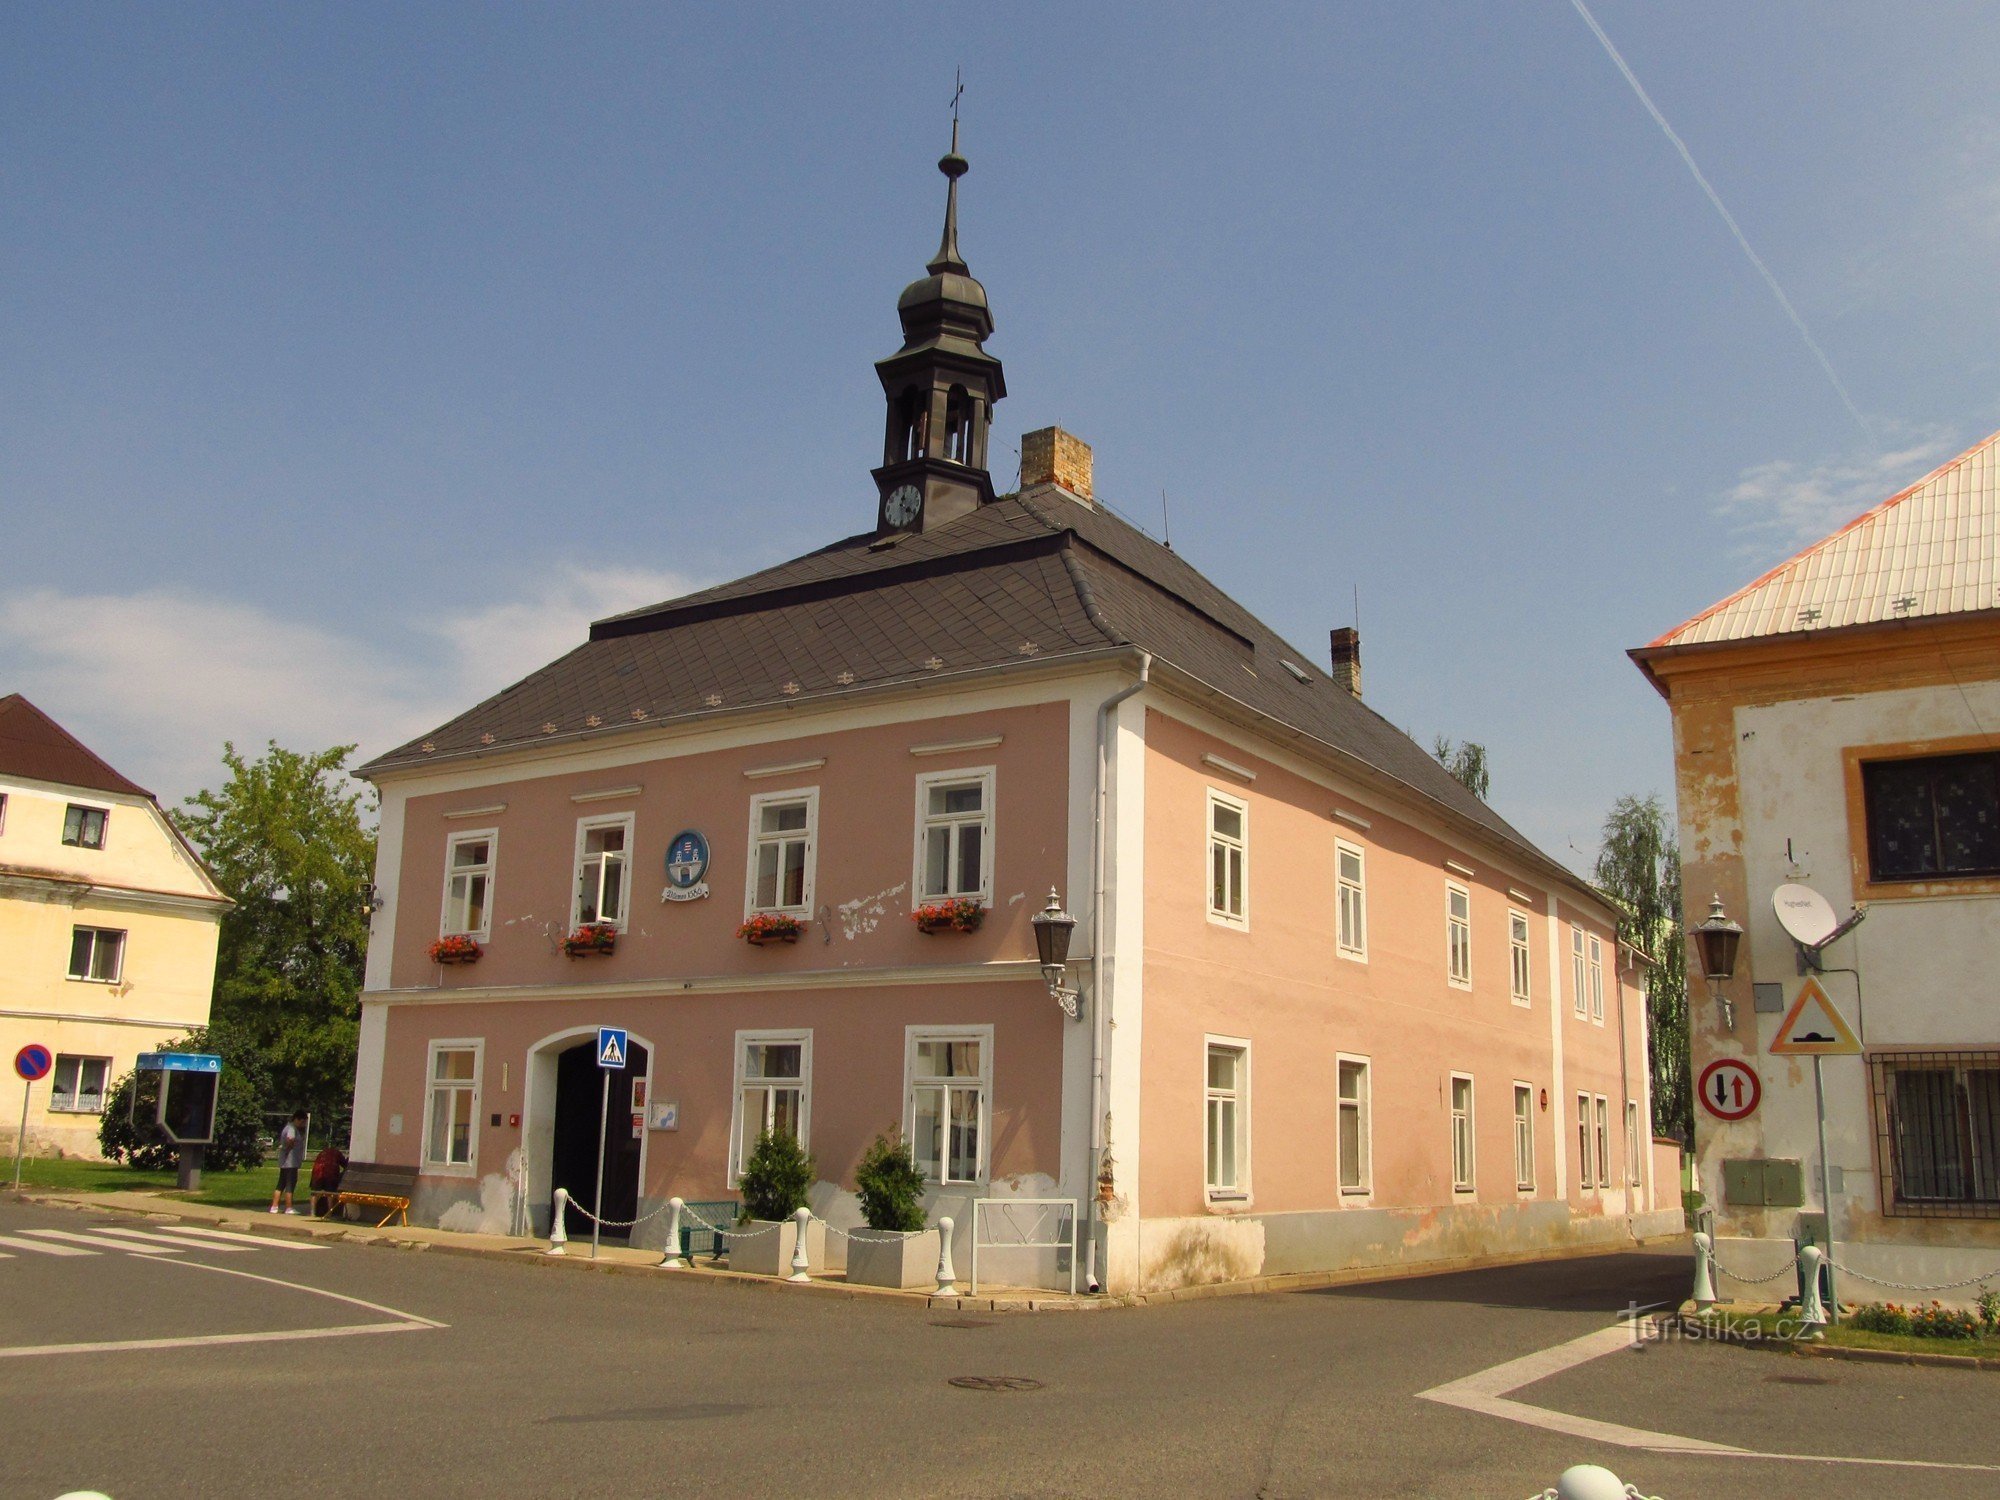 Vilémov rådhus fra slutningen af ​​det 18. århundrede med tårn og våbenskjold på facaden